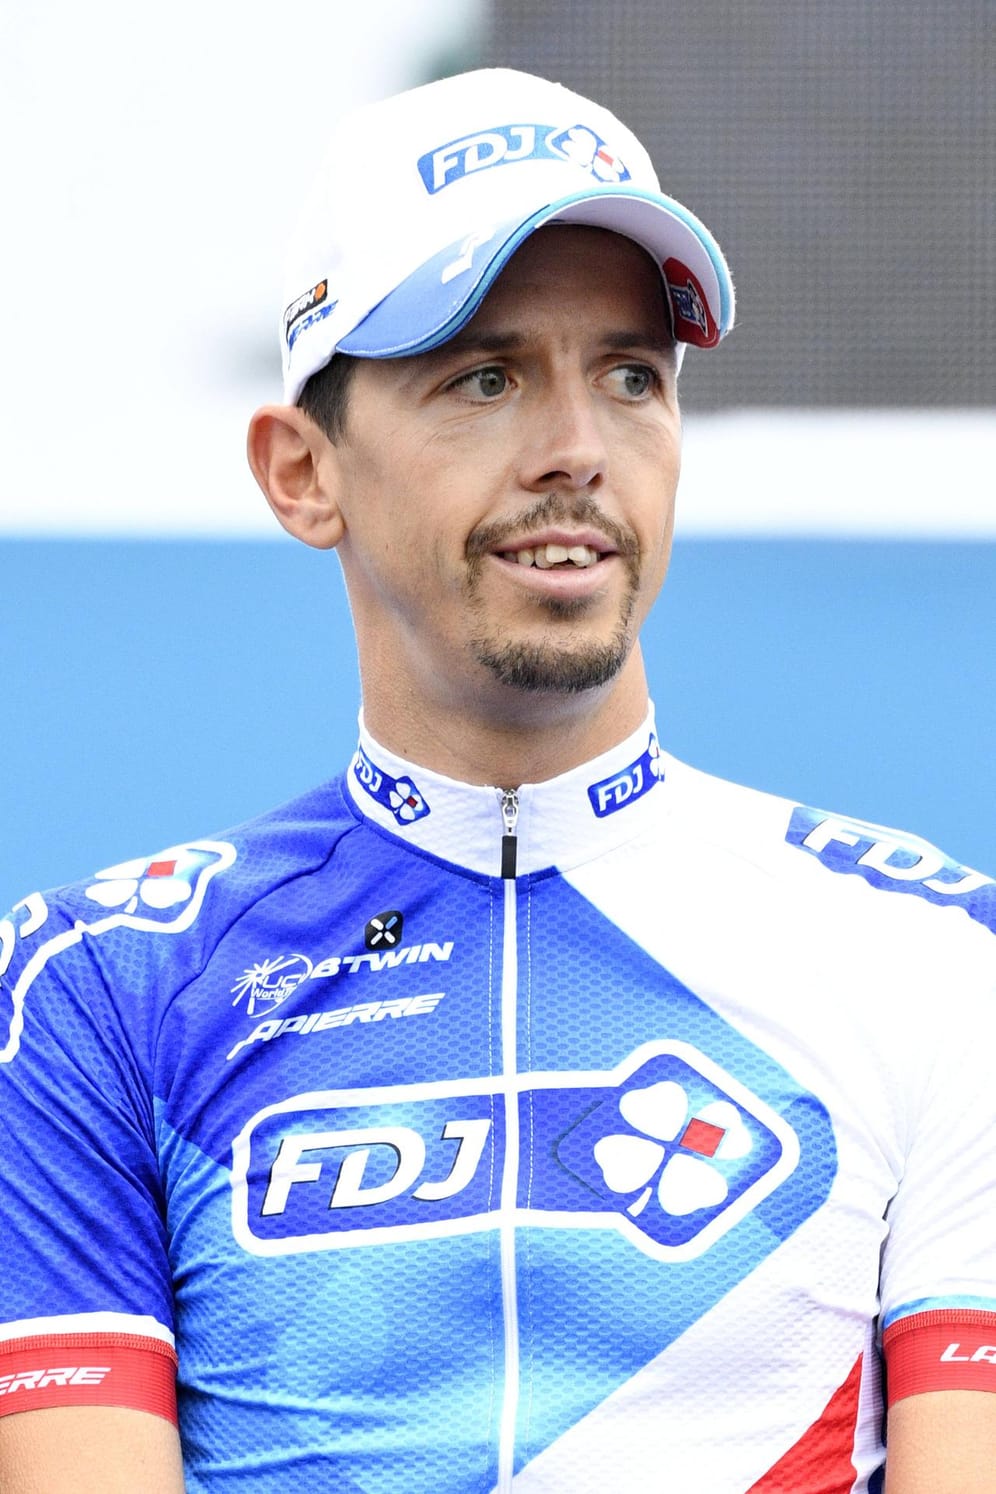 Vorzeitiges Aus: Auch Cedric Pineau aus dem Team FDJ musste die Tour während der neunten Etappe aufgeben.